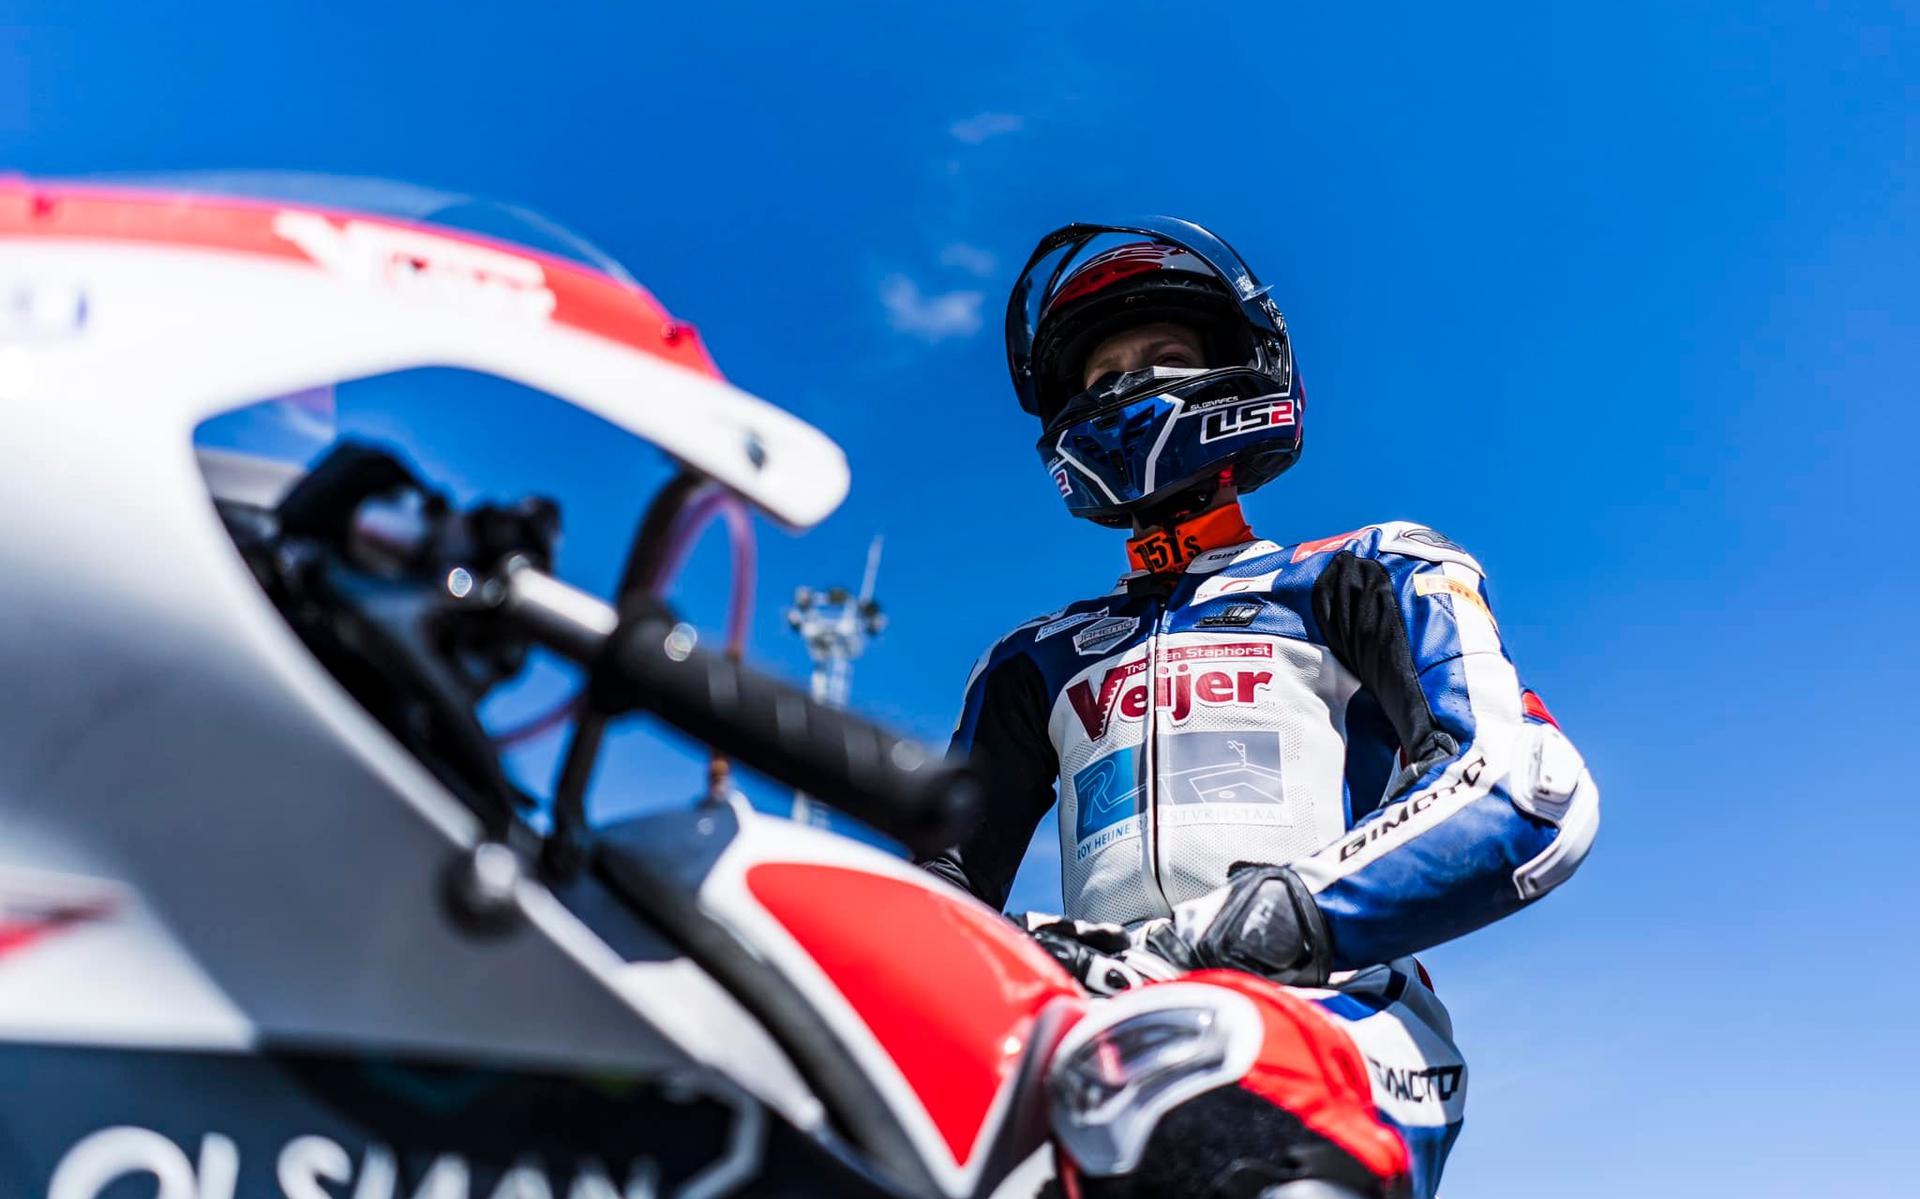 Il pilota motociclistico di Stafford Giano Weijer soddisfatto dell'inizio della stagione in Italia: “Il prossimo obiettivo è segnare punti”